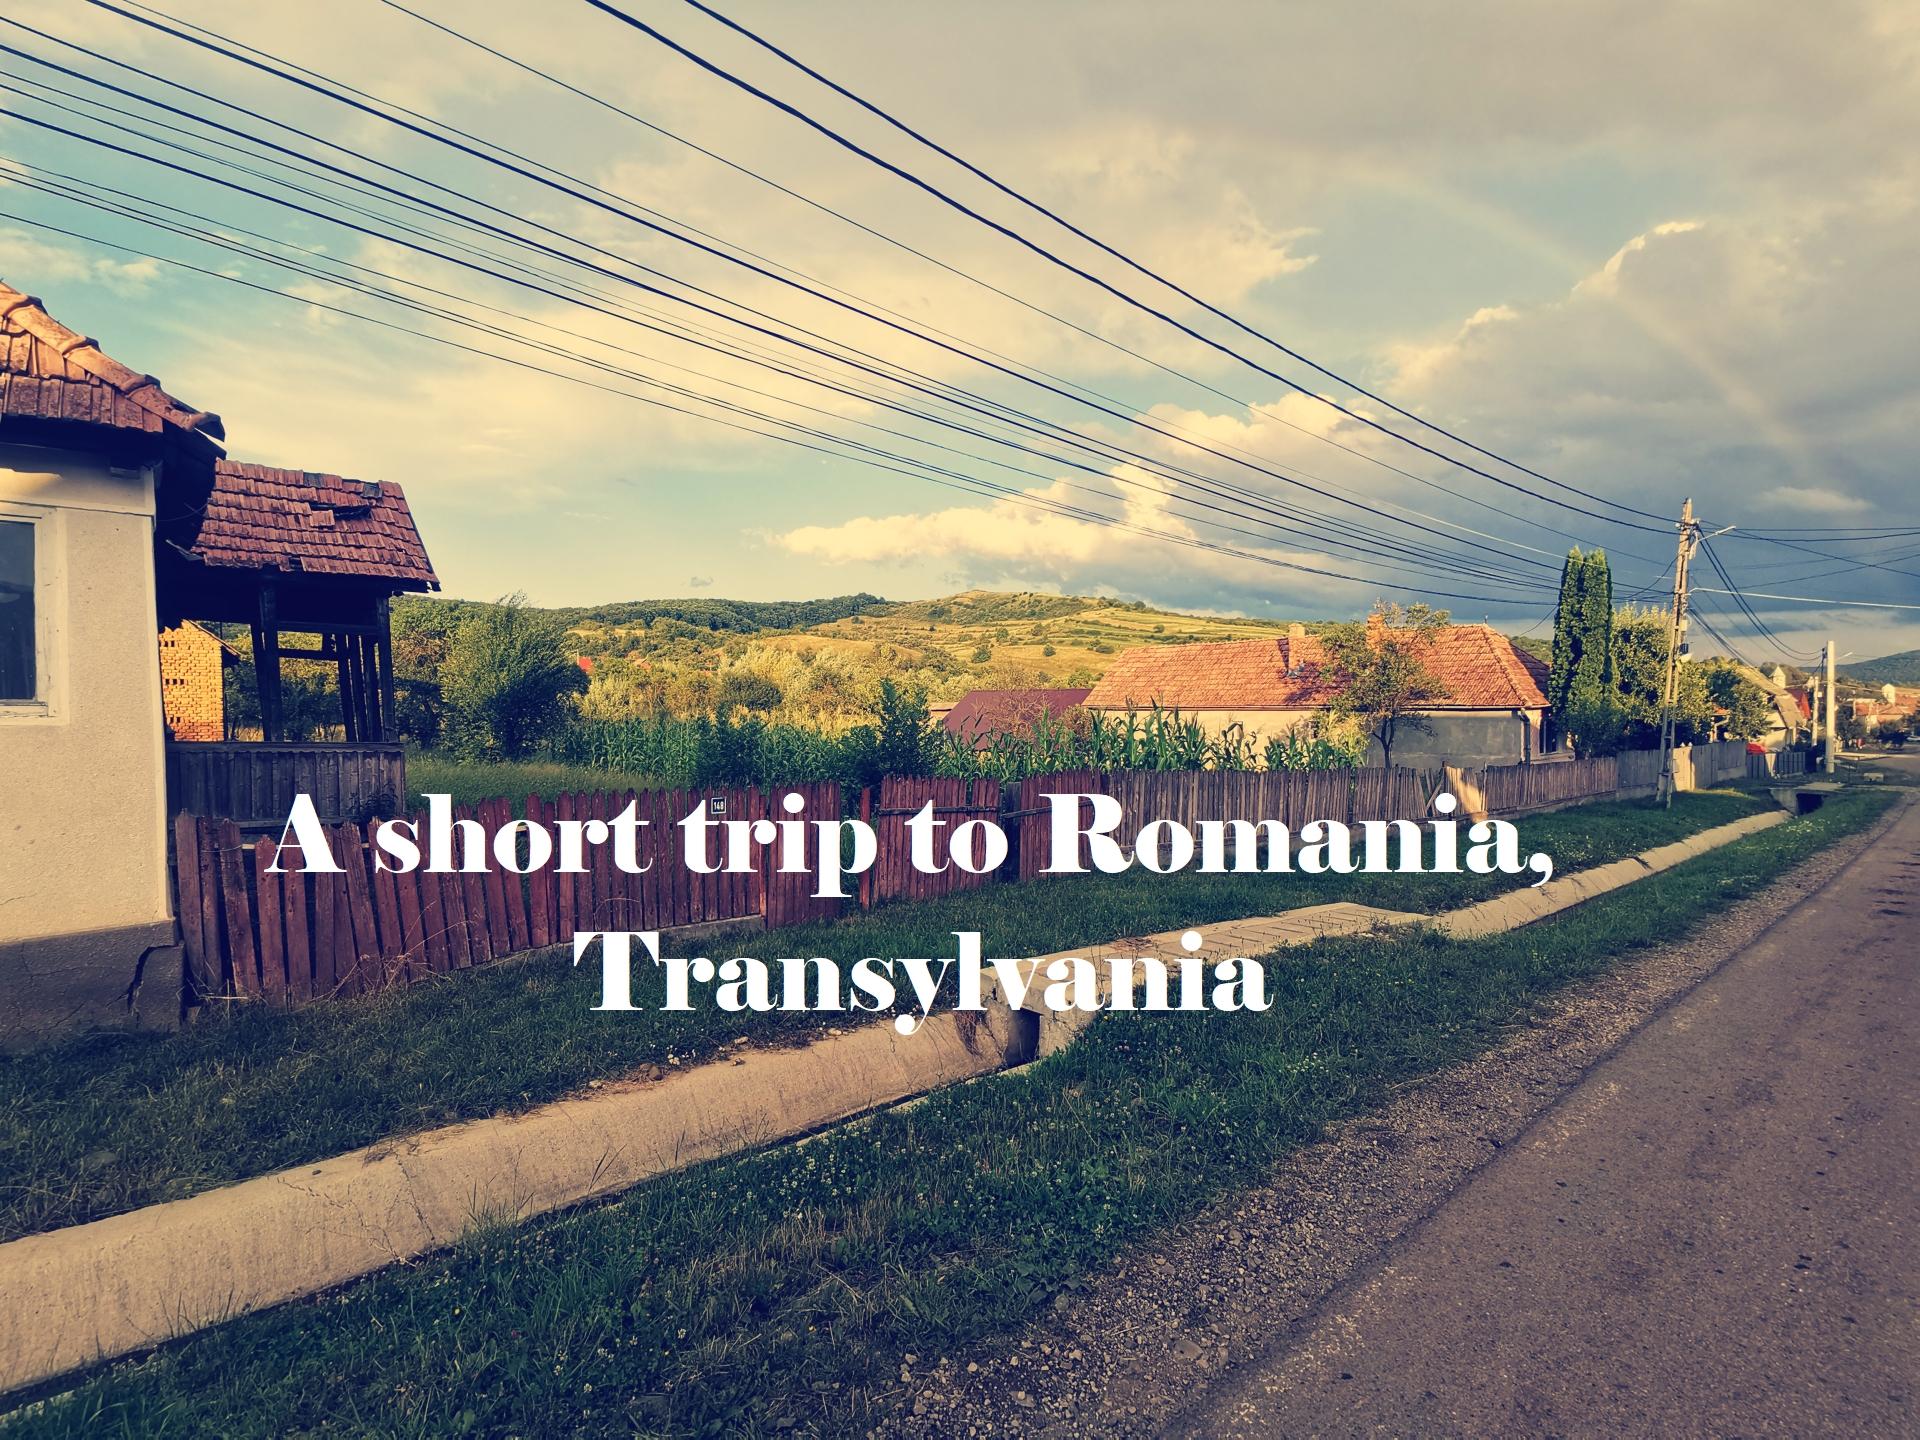 Buna Romania!